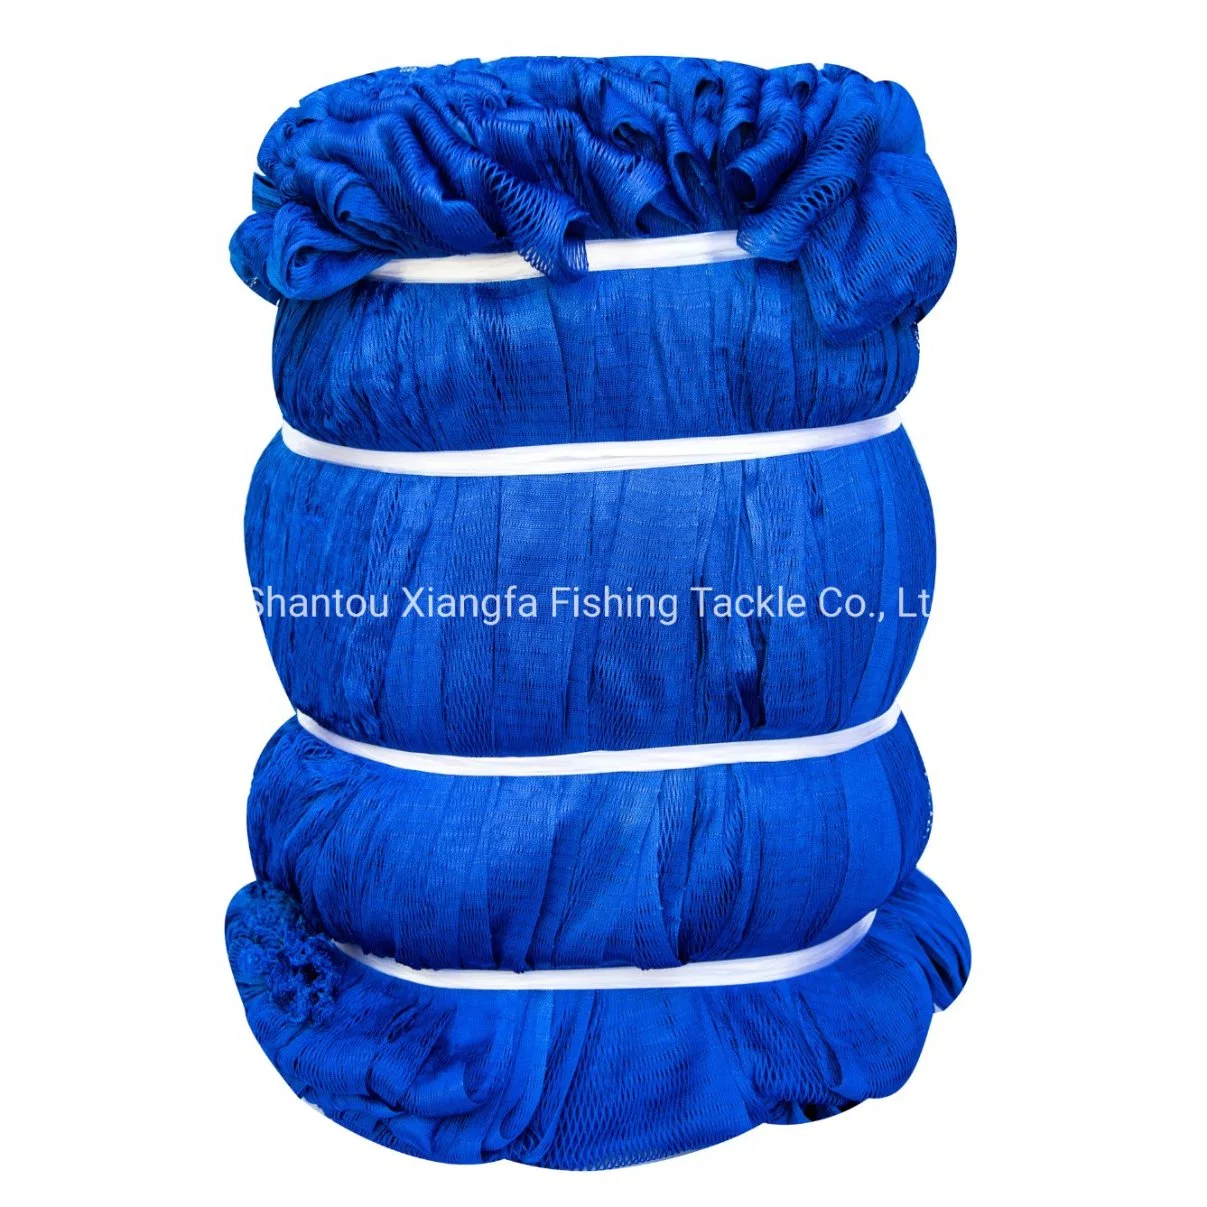 South America Fishing Tackle, Nylon Multifilament Fishing Net, Peru Fishing Nets, 400MD (Red De Pesca)